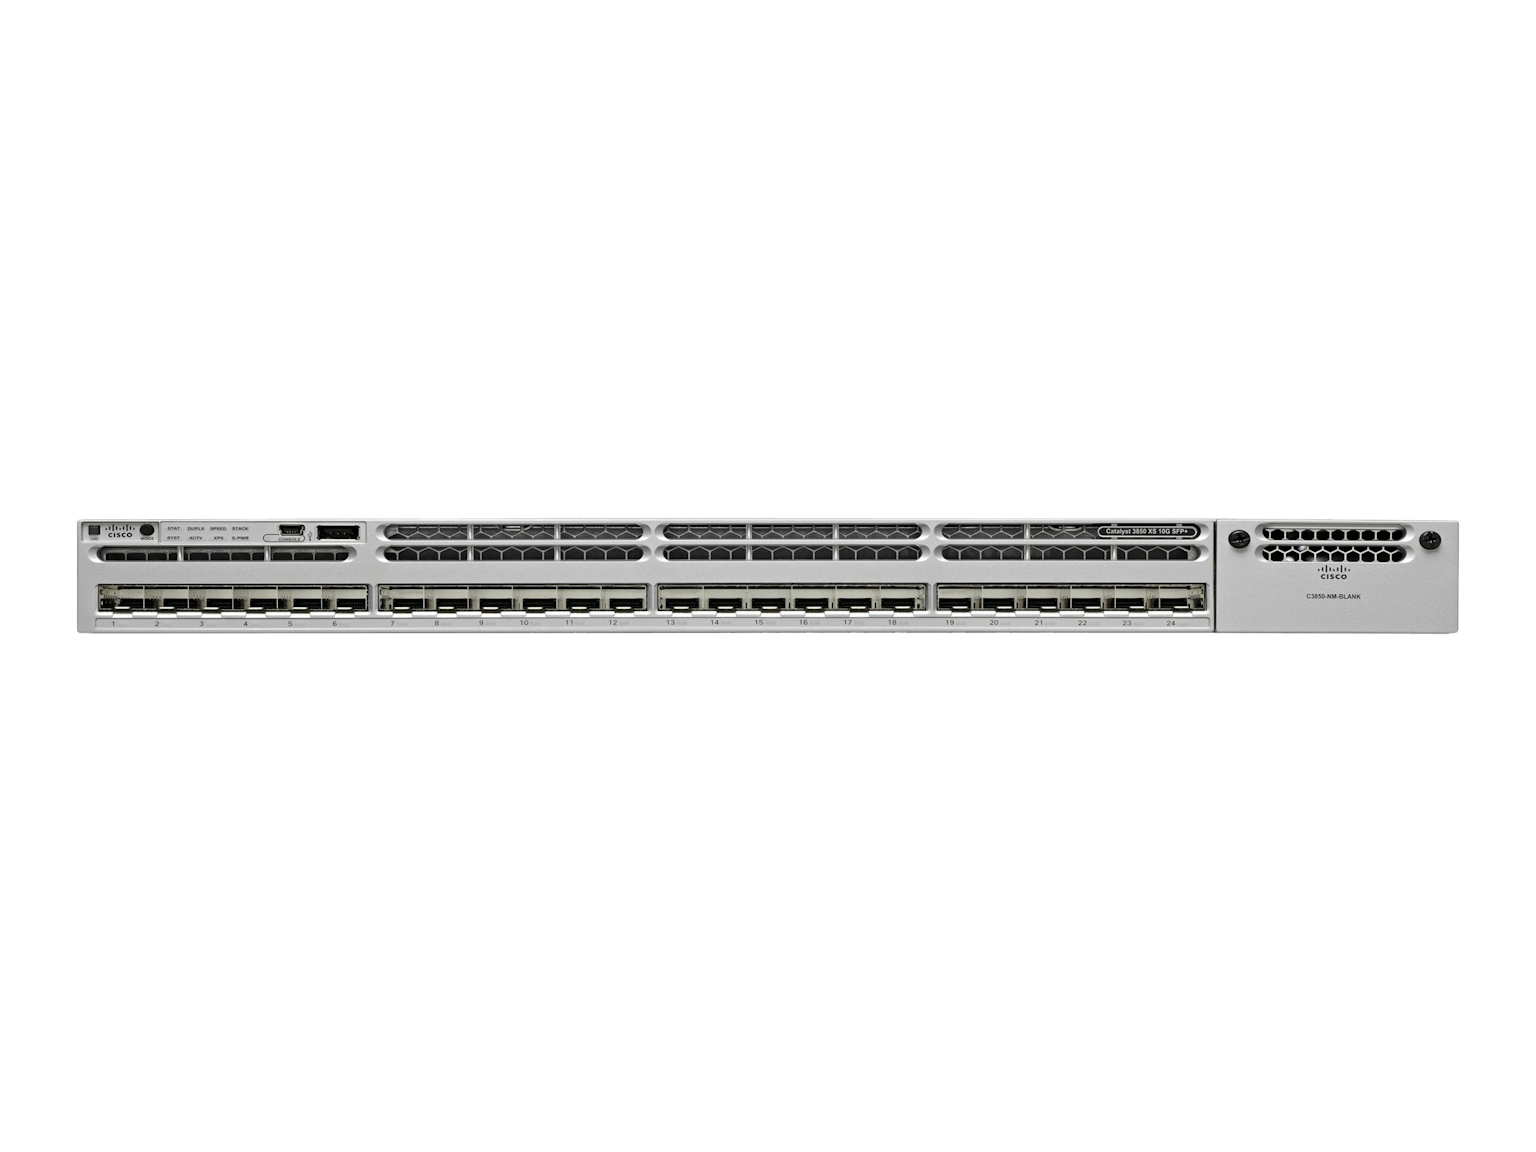 ws-c3850-24xs-s-Cisco-1